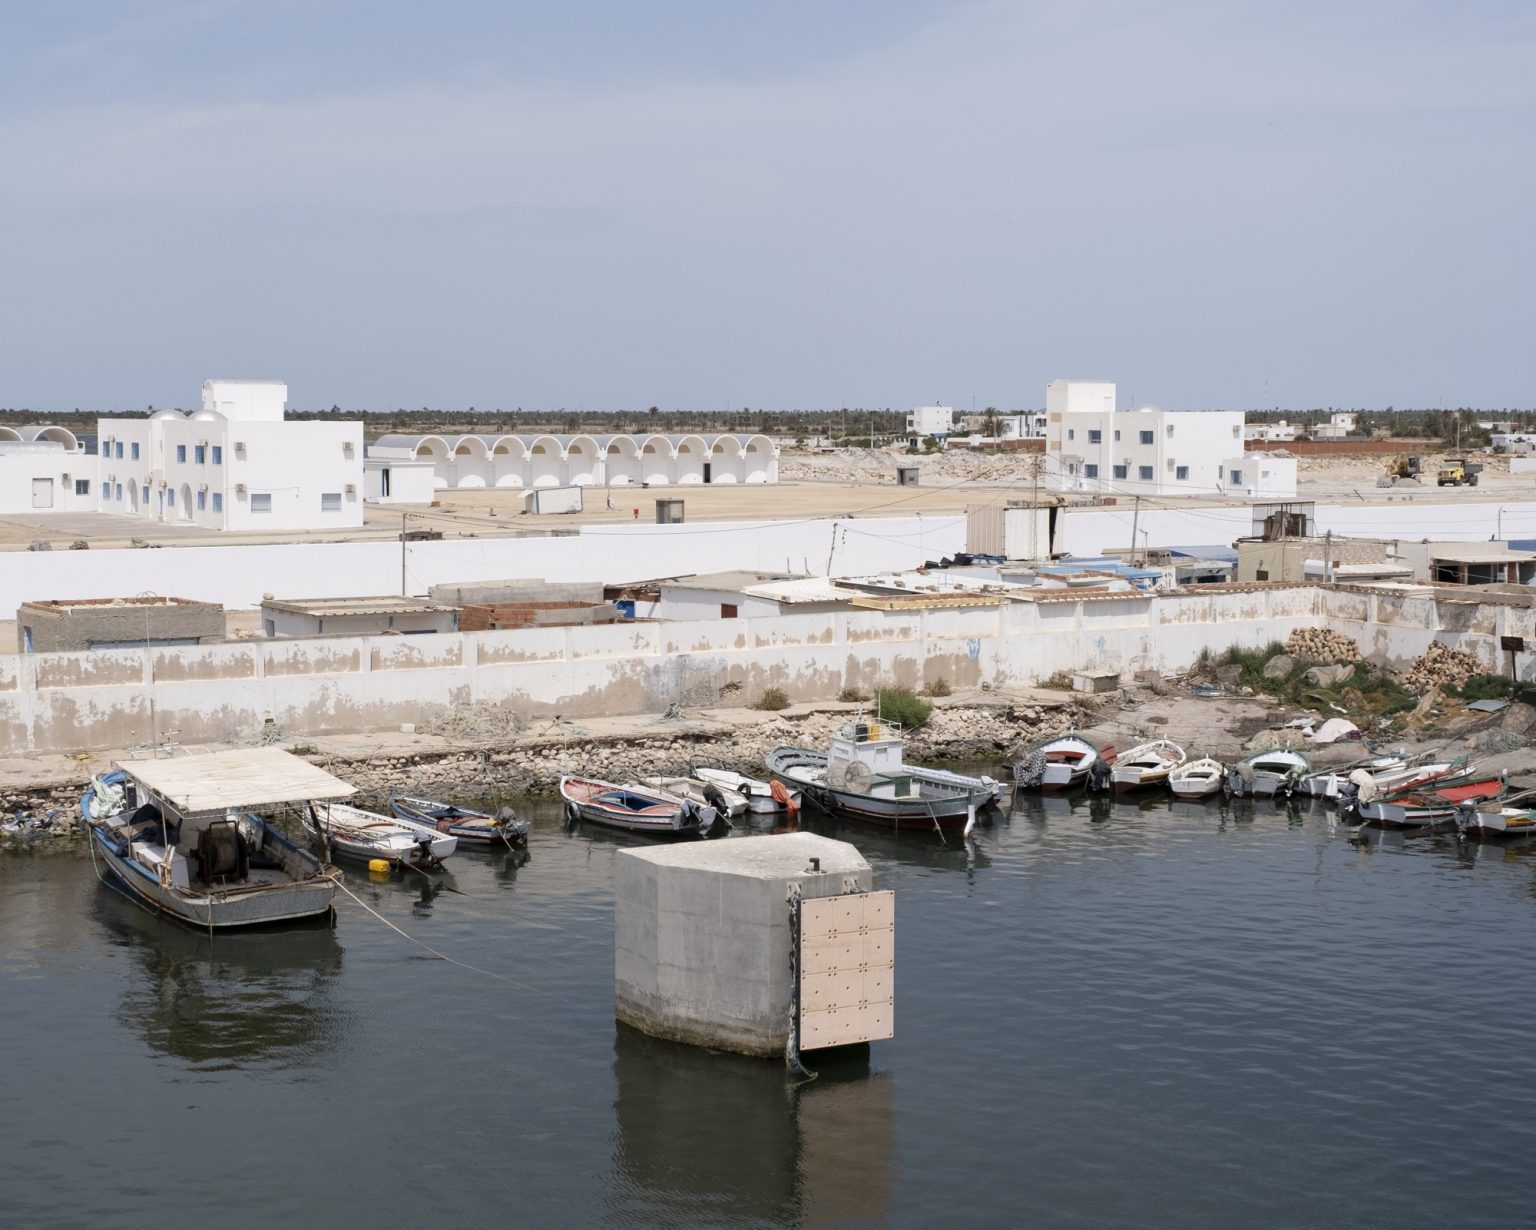 Kerkennah Islands (Tunisia), June 2022 - Port
><
Isole Kerkennah (Tunisia), giugno 2022  - Porto